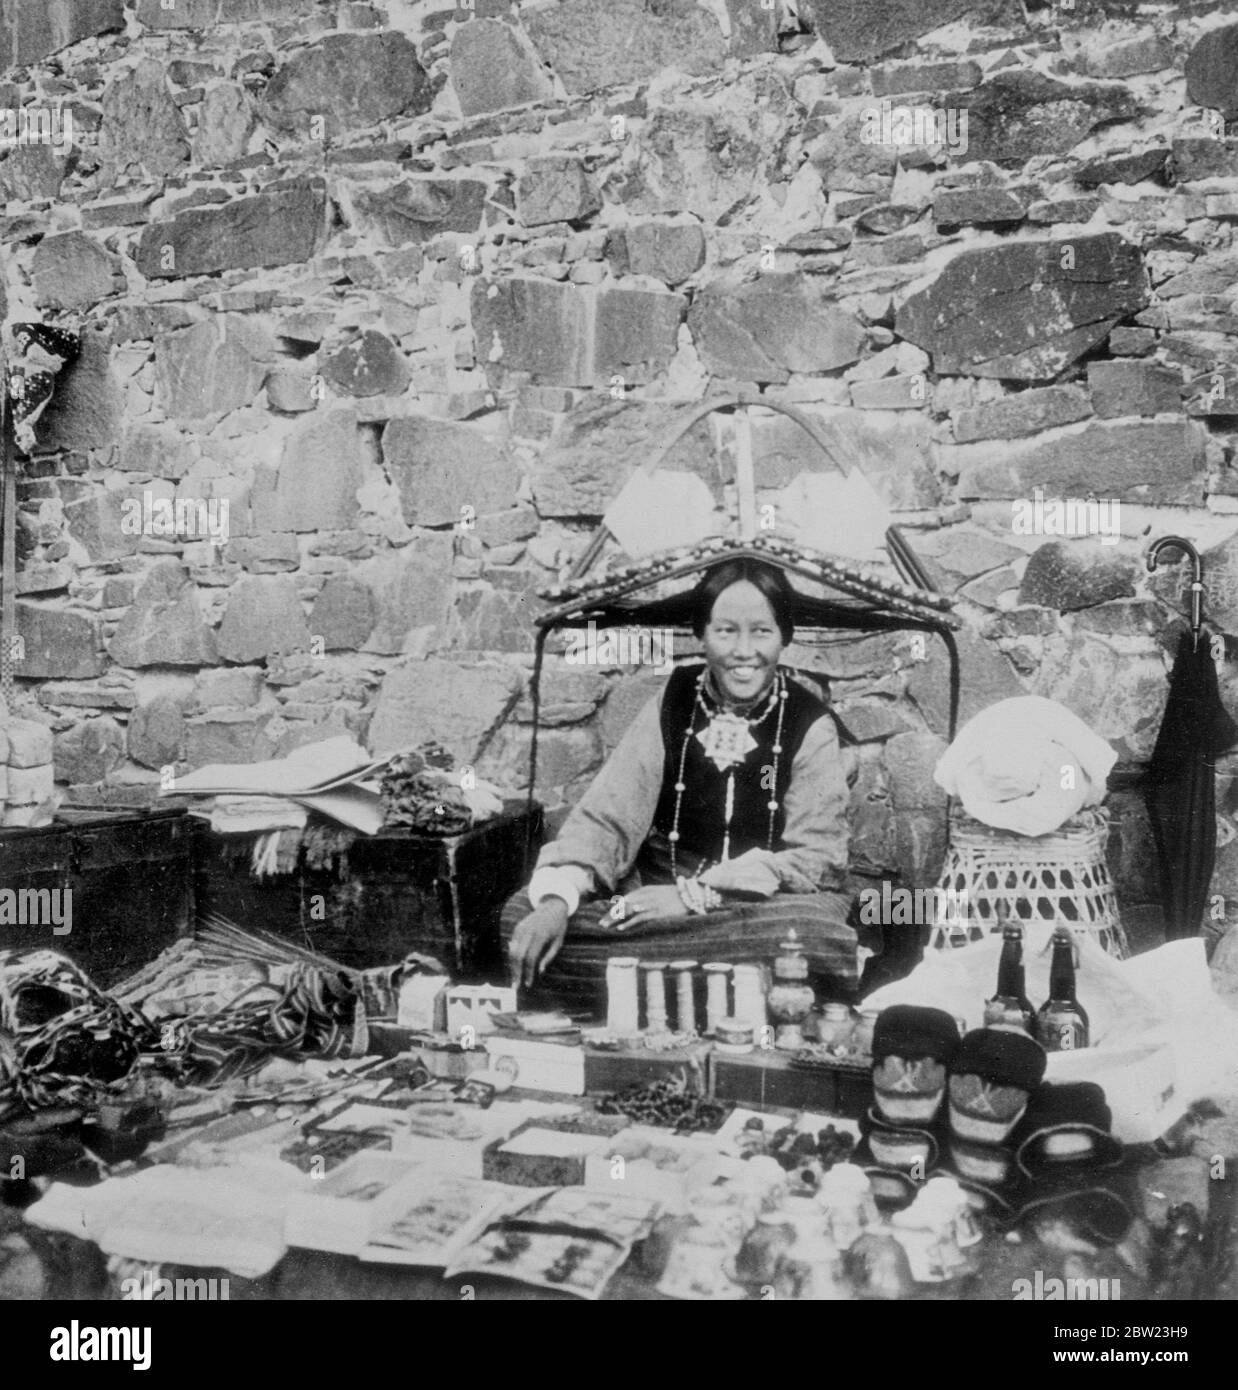 Nella terra poco conosciuta dei Lamas. Queste immagini sono state fatte da membri di una spedizione inviata nella 'Terra Proibita' dei Lamas, il Tibet, il misterioso paese che confina con l'India e la Cina. Solo dopo cinque anni di negoziati fu dato il permesso alla spedizione di visitare Lhasa, la città Santa, che solo una dozzina di uomini bianchi sono conosciuti per essere entrati. Mostre fotografiche, è visto nel mercato di Shigatse seconda città più grande del Tibet. La donna indossa il tipico indirizzo Shigatse e intorno al collo una scatola d'oro e turchese che contiene preghiere. Foto Stock